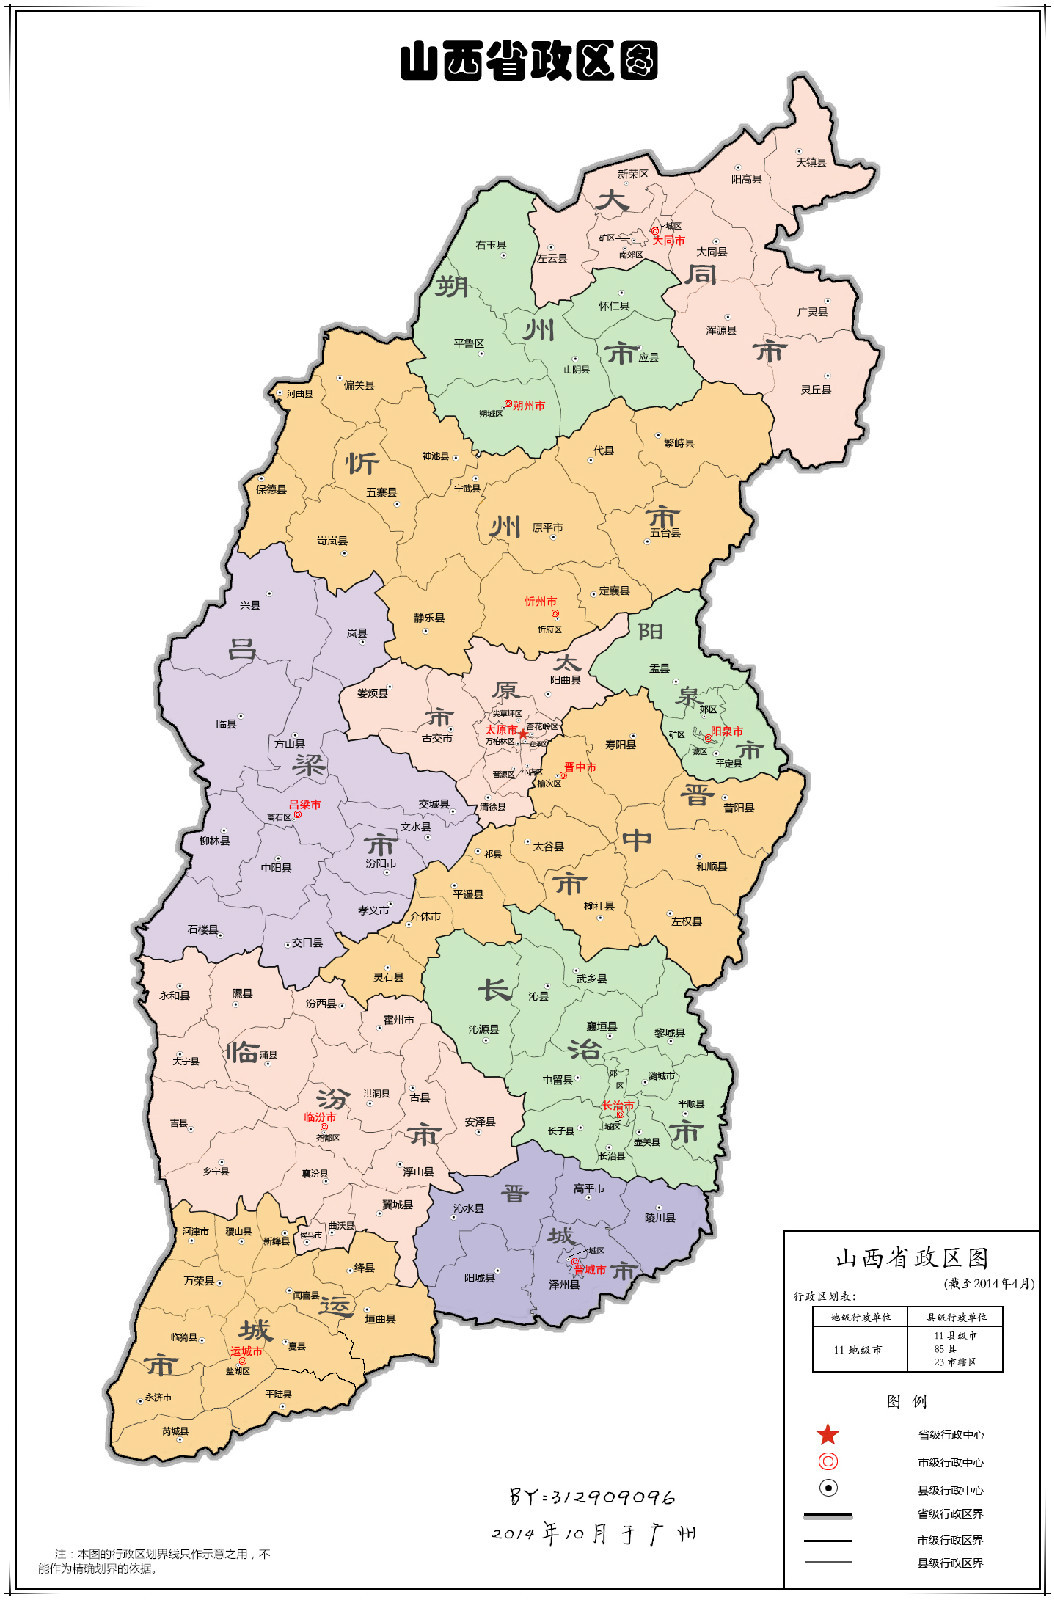 陕西“十四五”高速公路建设规划图公布 - 陕工网